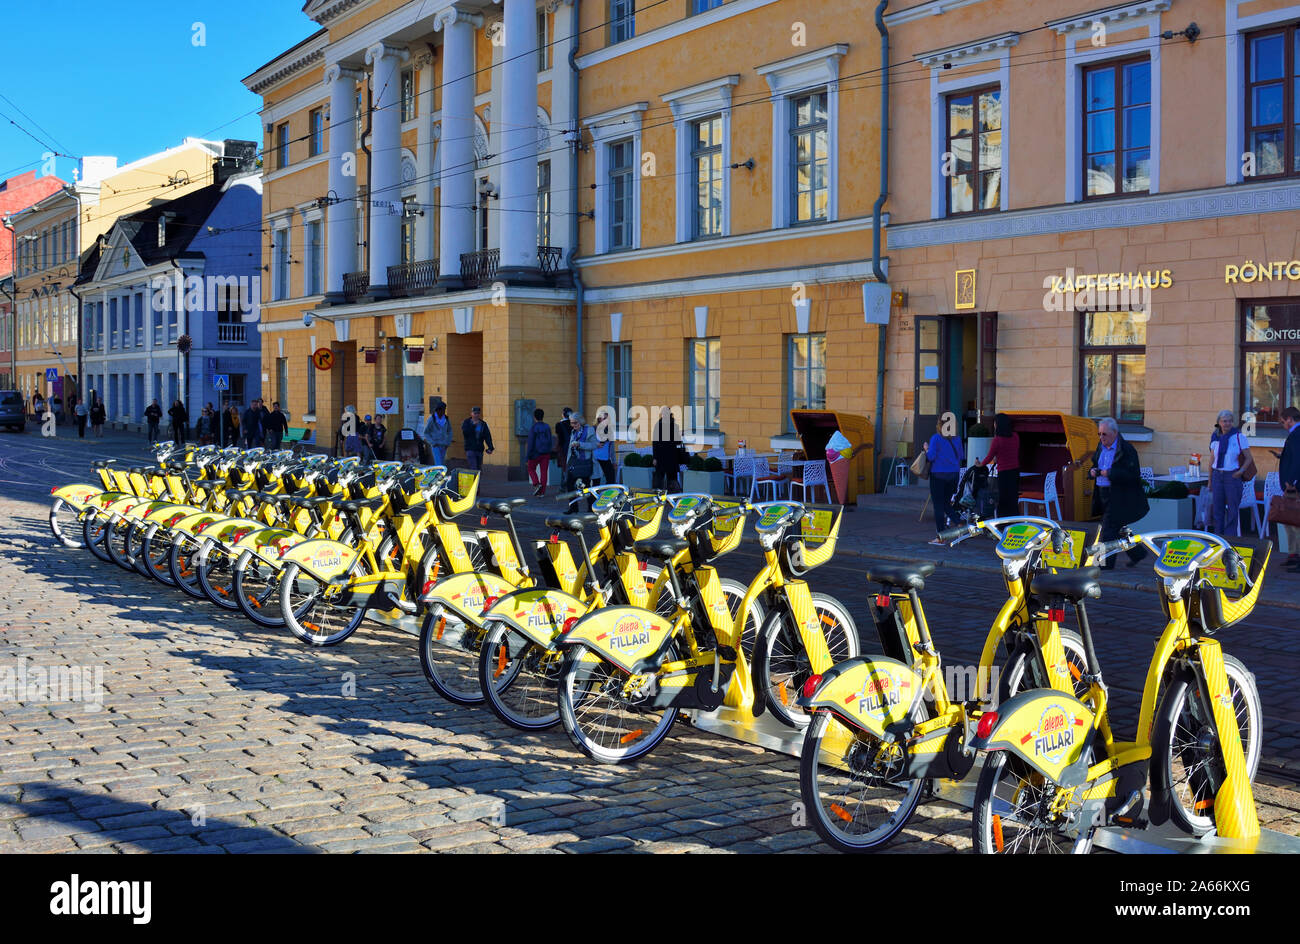 Hallituskatu Straße mit modernen Fahrräder zu mieten. Helsinki, Finnland Stockfoto